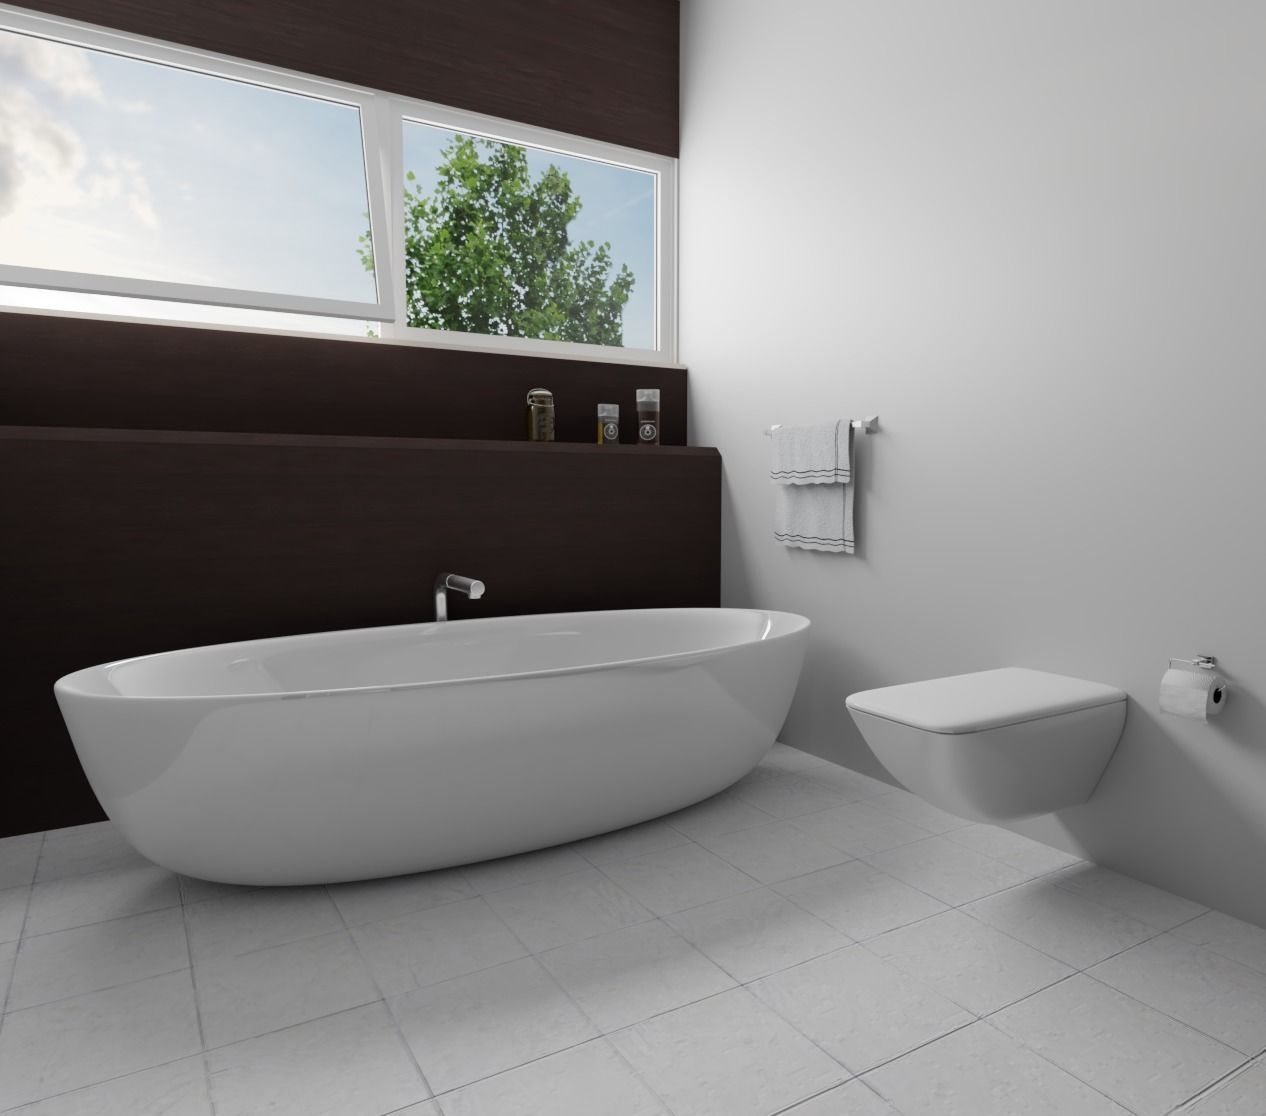 modern-bathroom-interior-3d-model-obj-3ds-fbx-blend-dae.jpg